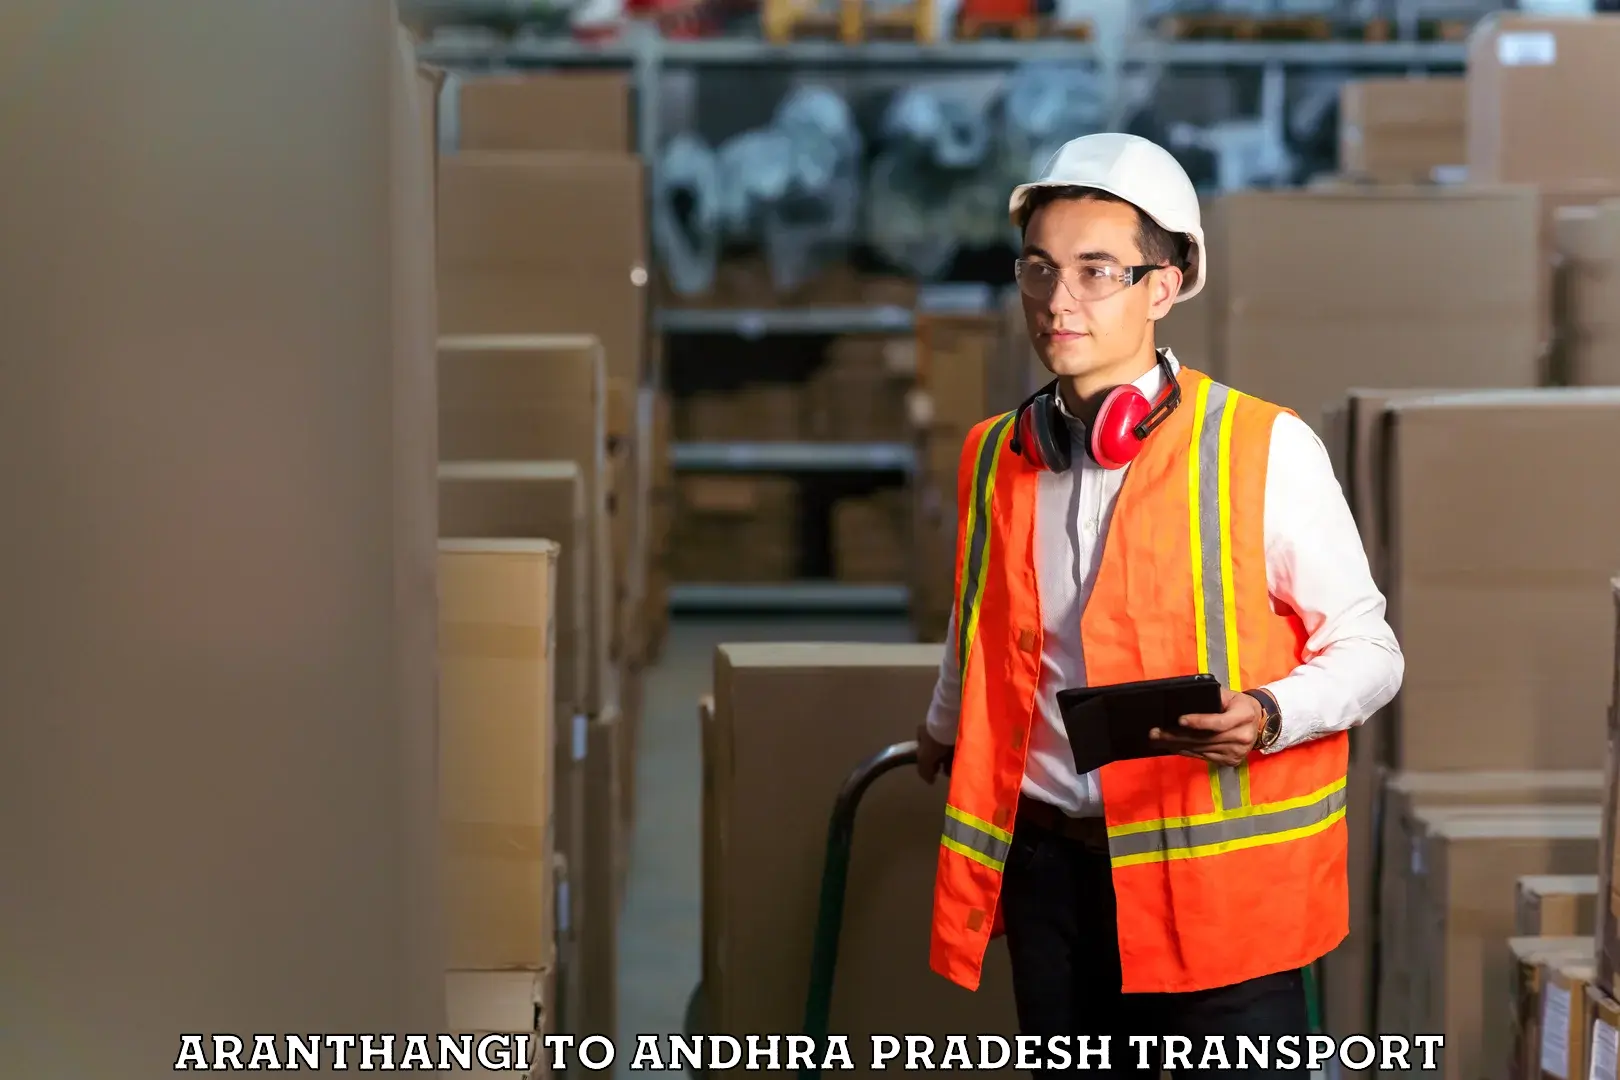 Shipping partner Aranthangi to Ranastalam